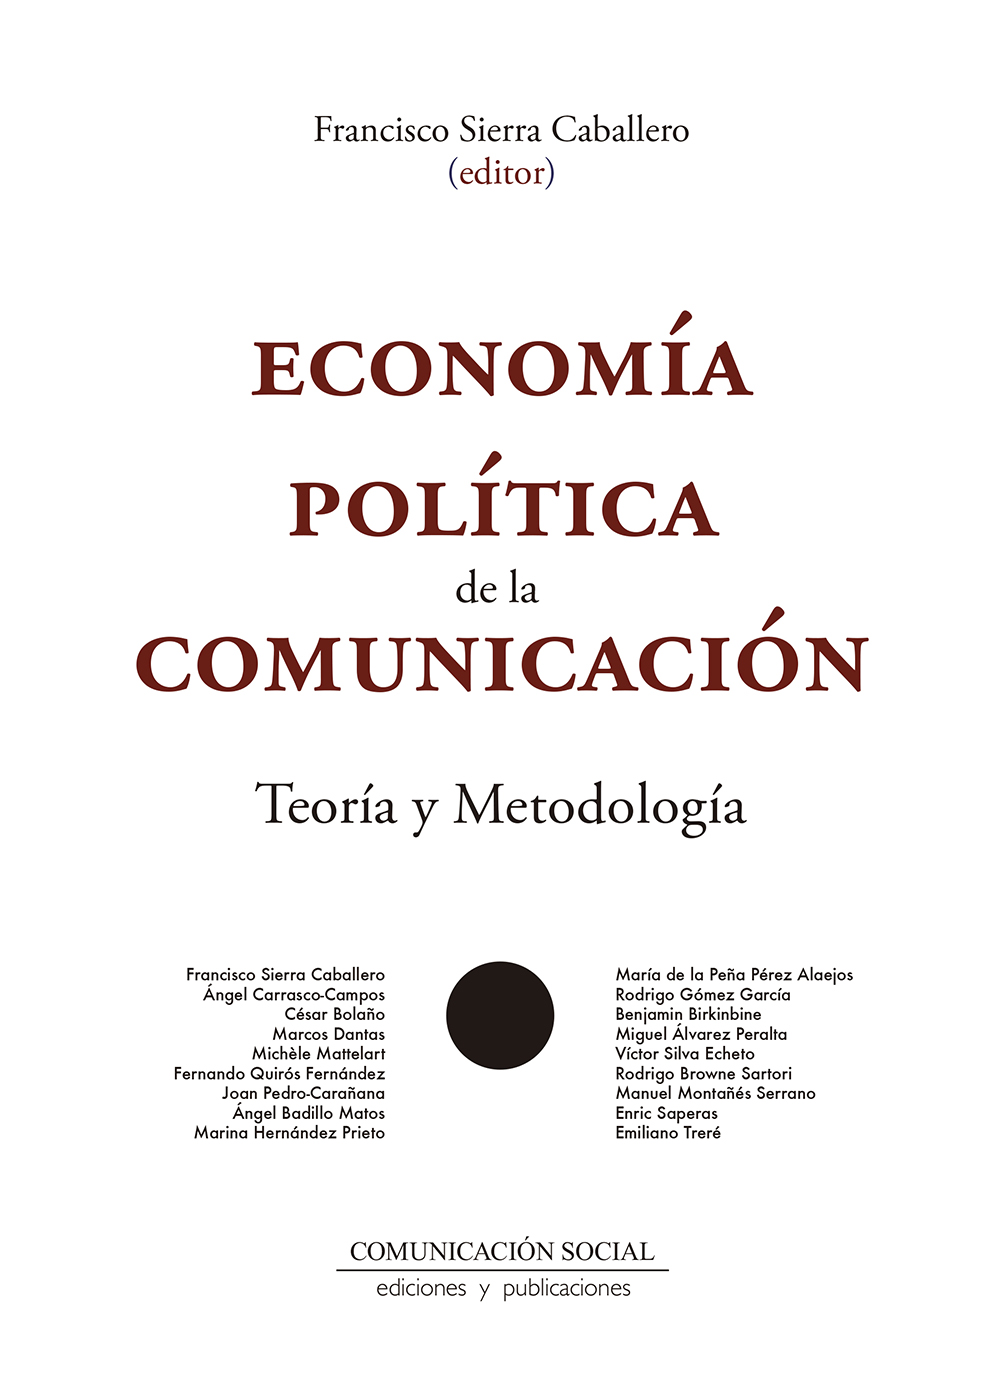 Imagen de portada del libro Economía política de la comunicación